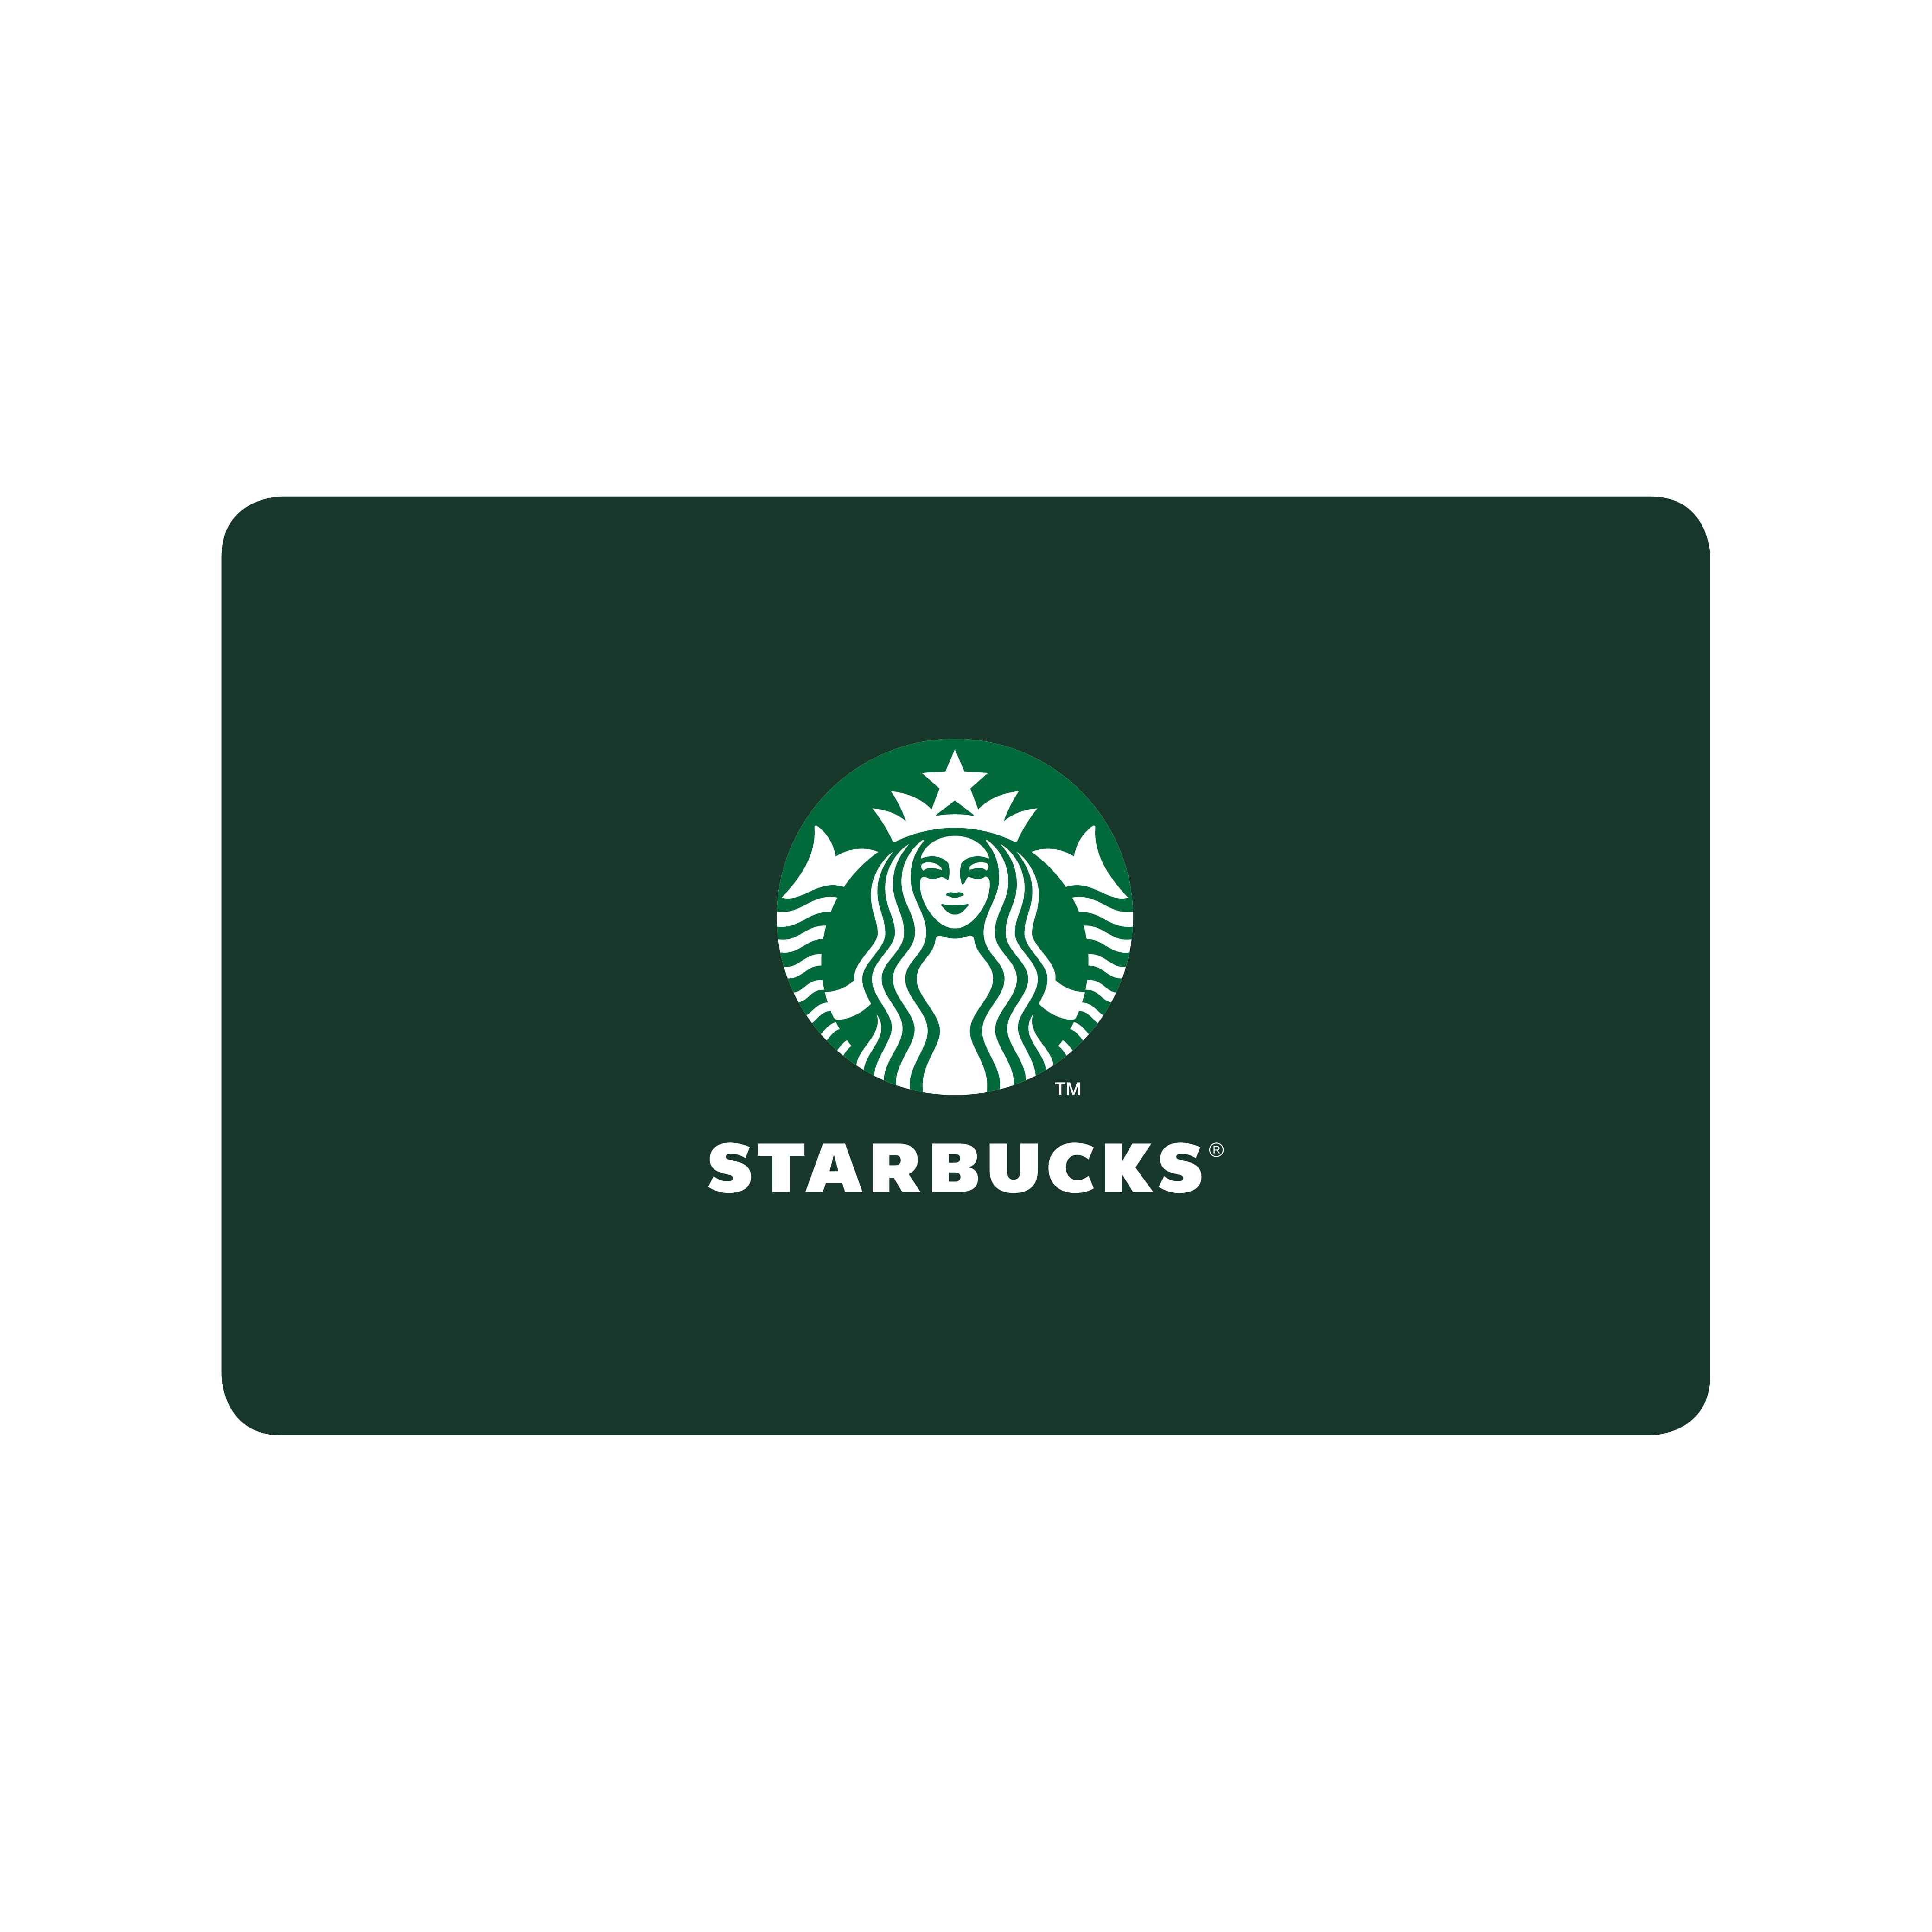 Starbucks gavekort - 100 kr